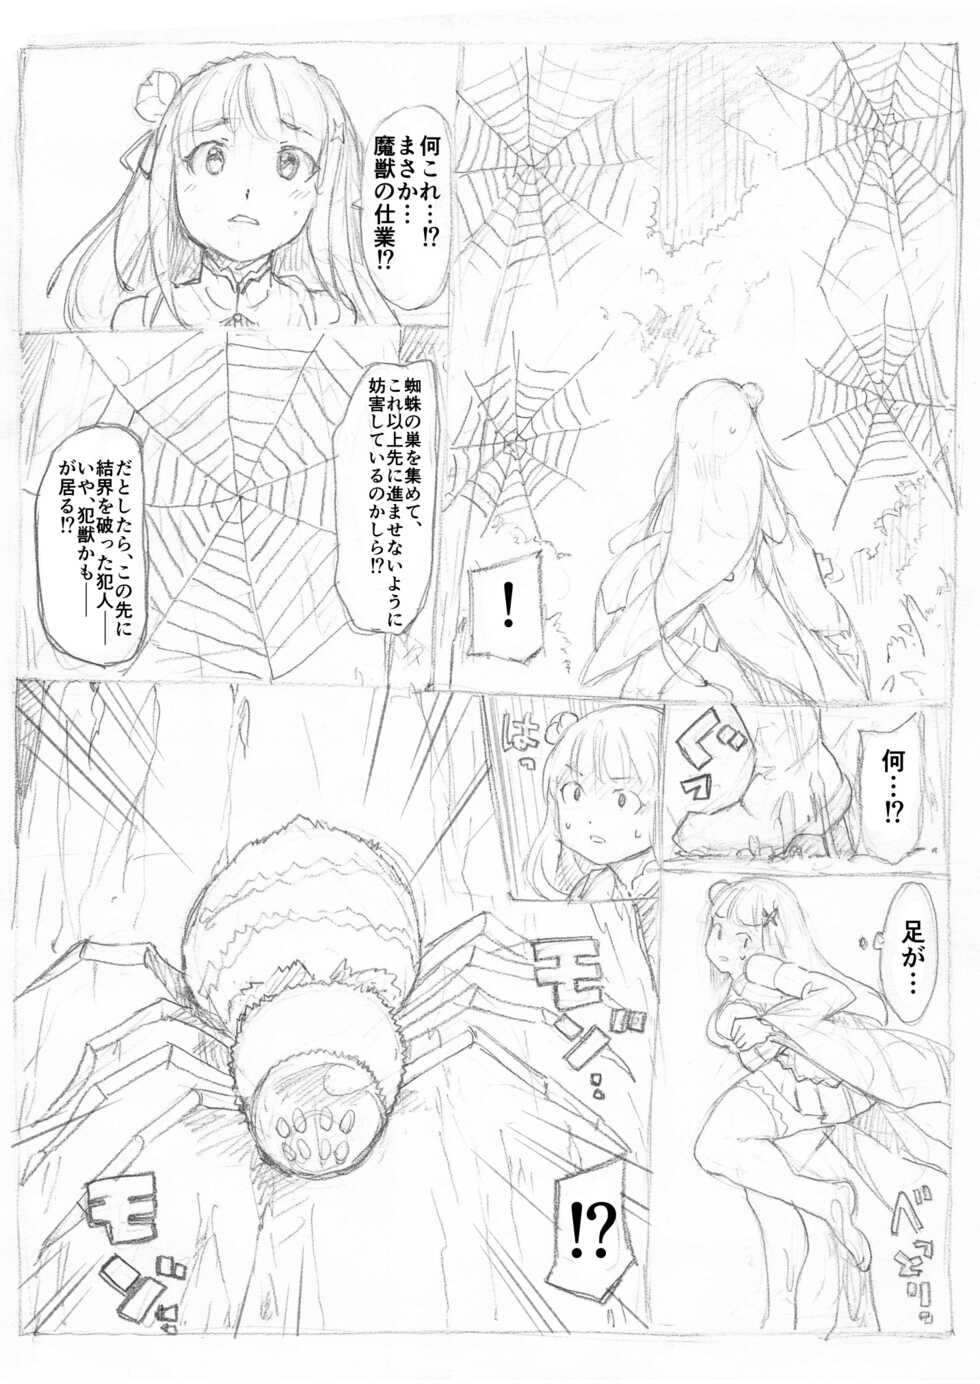 [Fujiwara Shunichi] Emilia Kumo Ito Kousoku Manga (Re: Zero kara Hajimeru Isekai Seikatsu) - Page 3